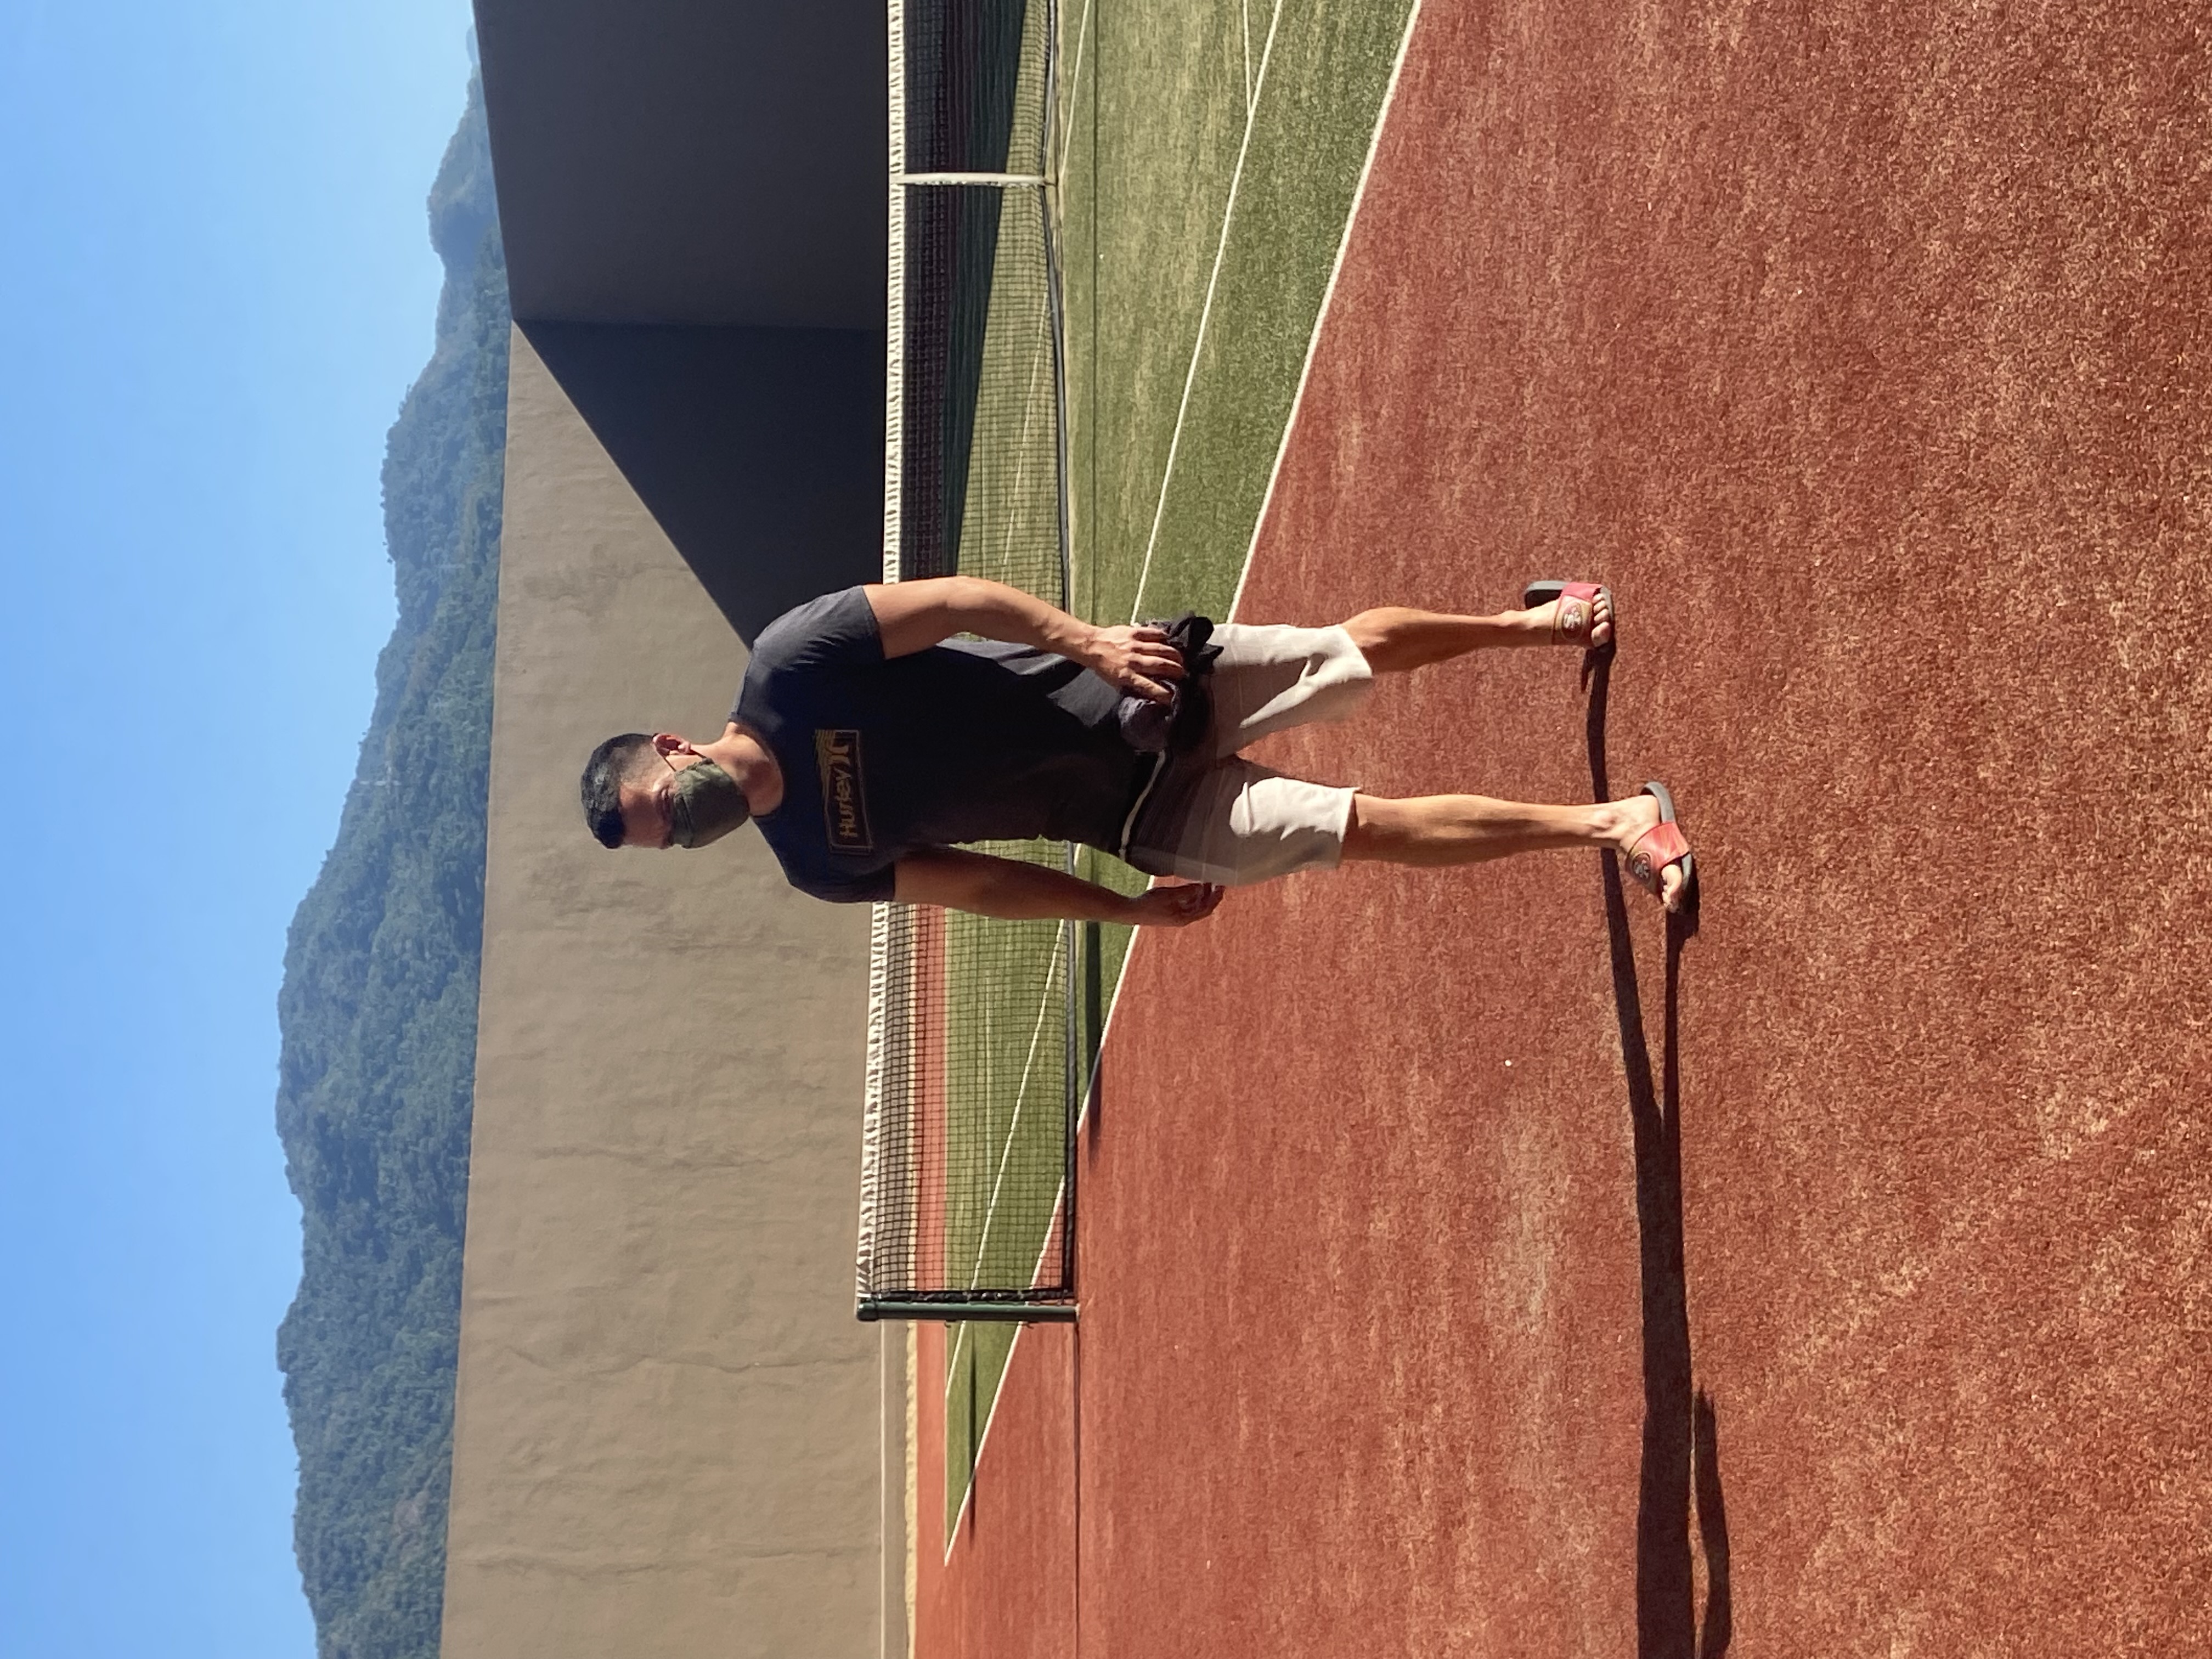 David H. teaches tennis lessons in Mesa, AZ